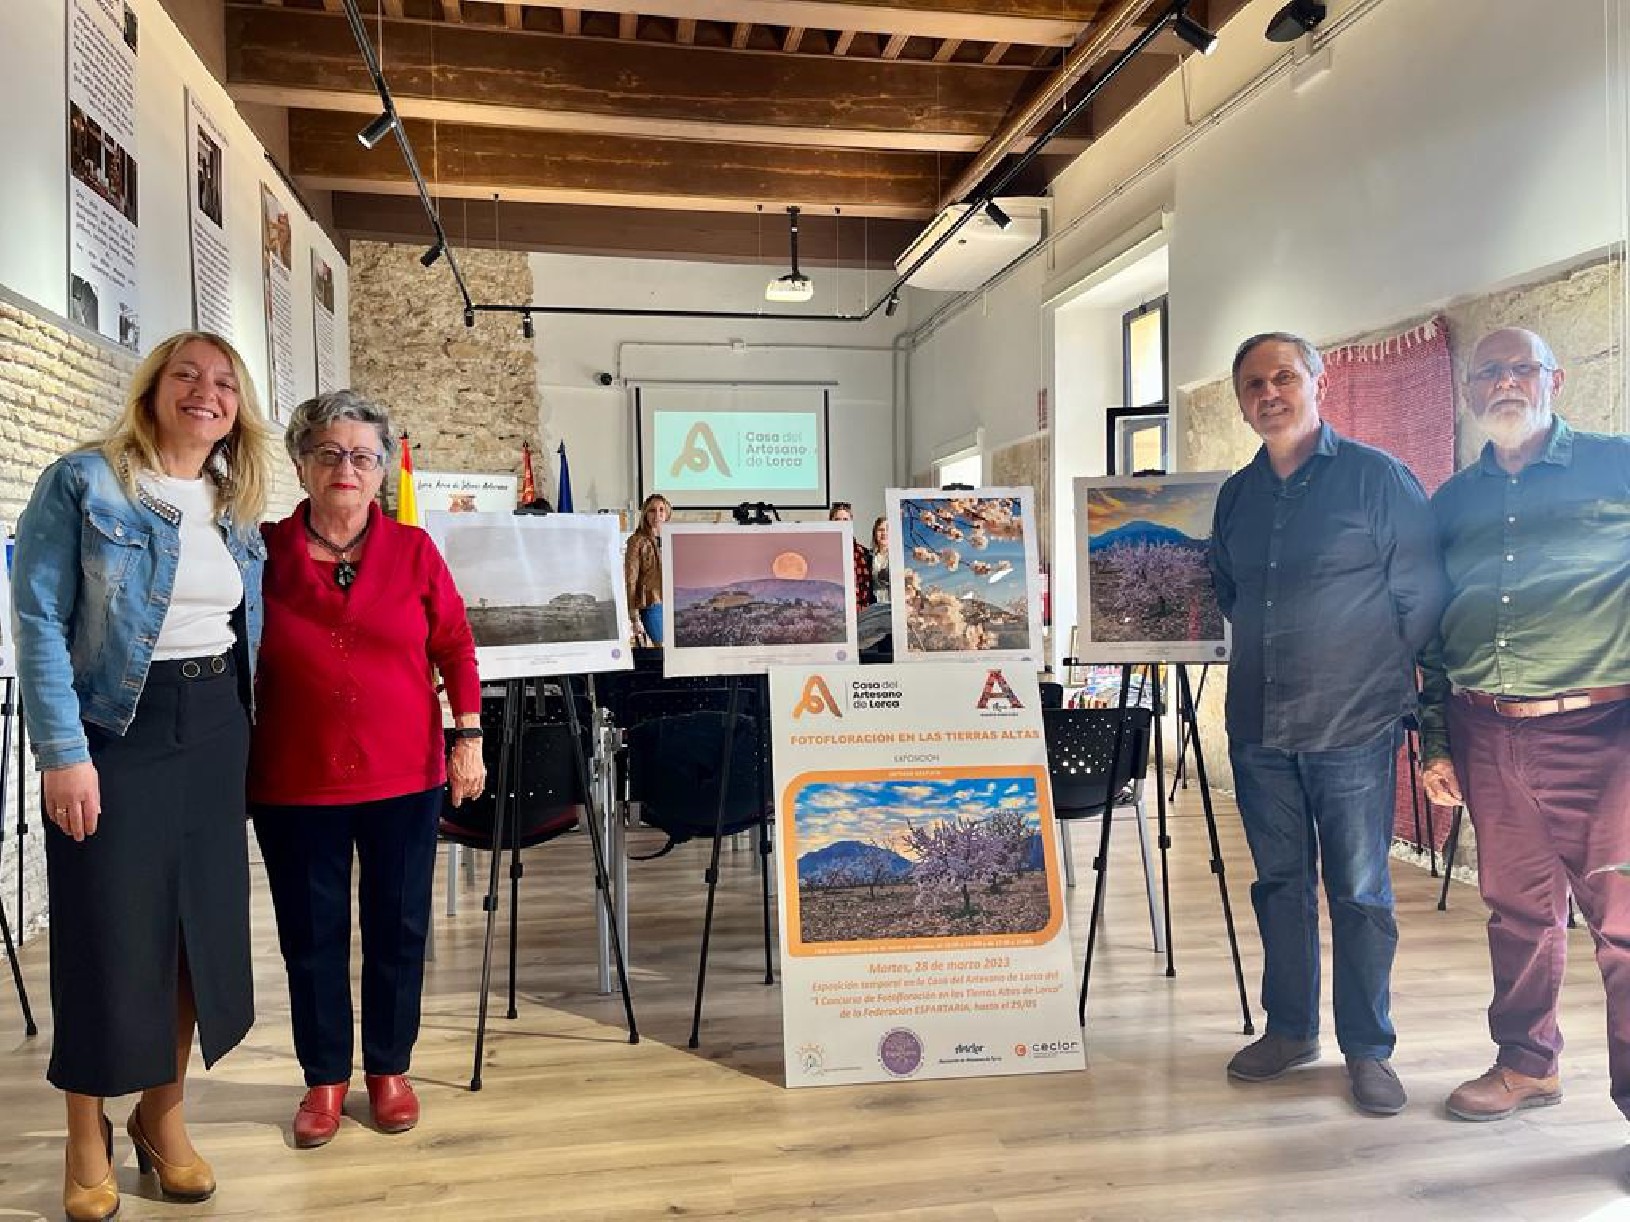 LORCA | La Casa del Artesano acoge una exposición con los trabajos del ”I Concurso de Fotofloración en las Tierras Altas”